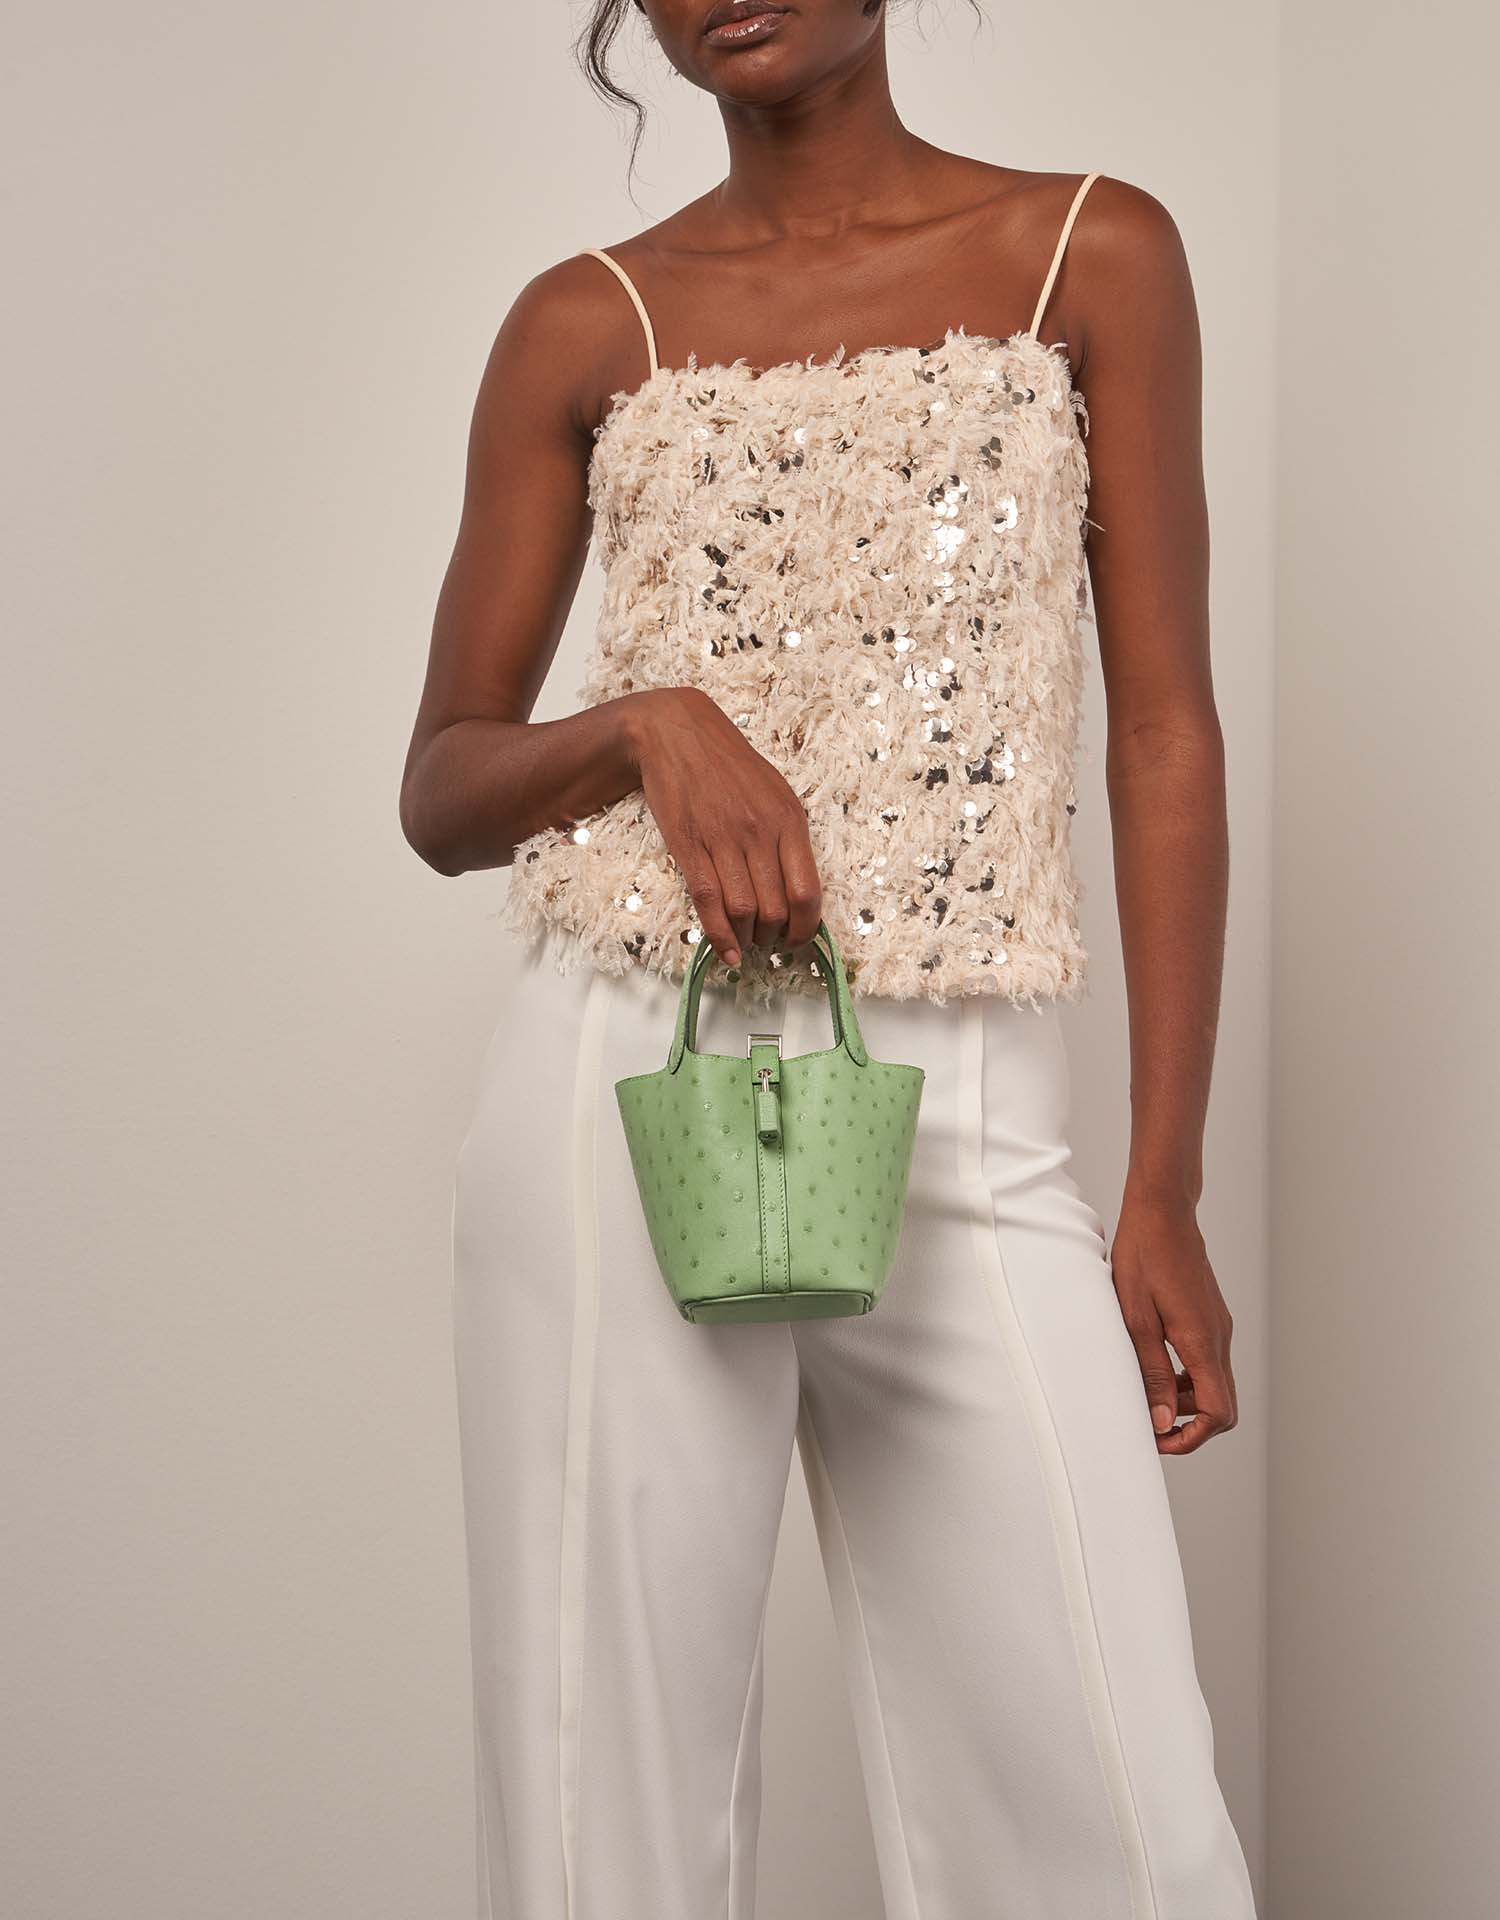 Hermès Picotin 14 VertCriquet auf Model | Verkaufen Sie Ihre Designertasche auf Saclab.com